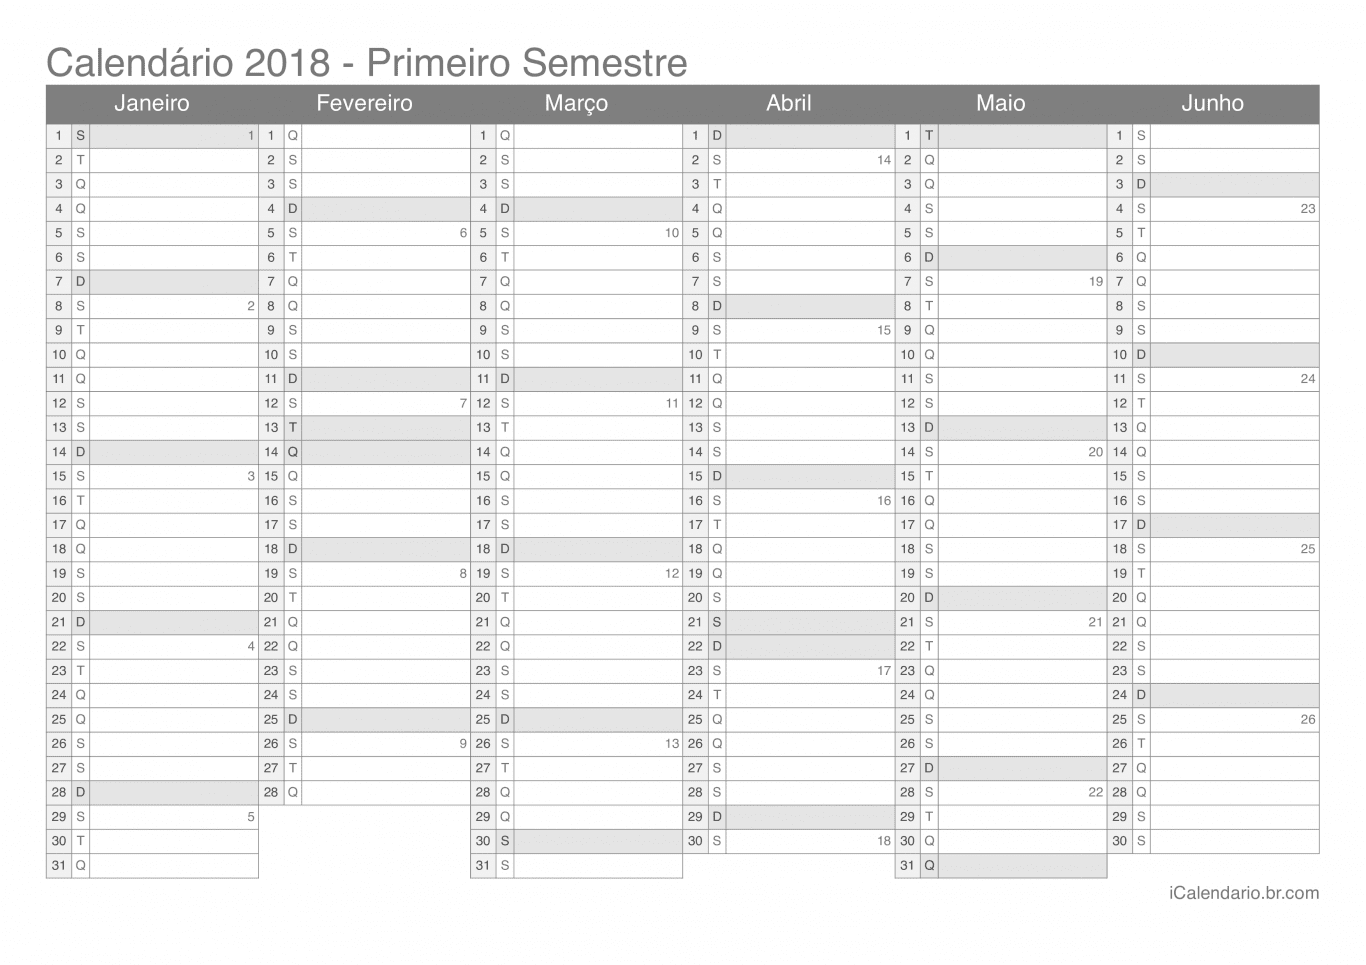 Calendário por semestre com números da semana 2018